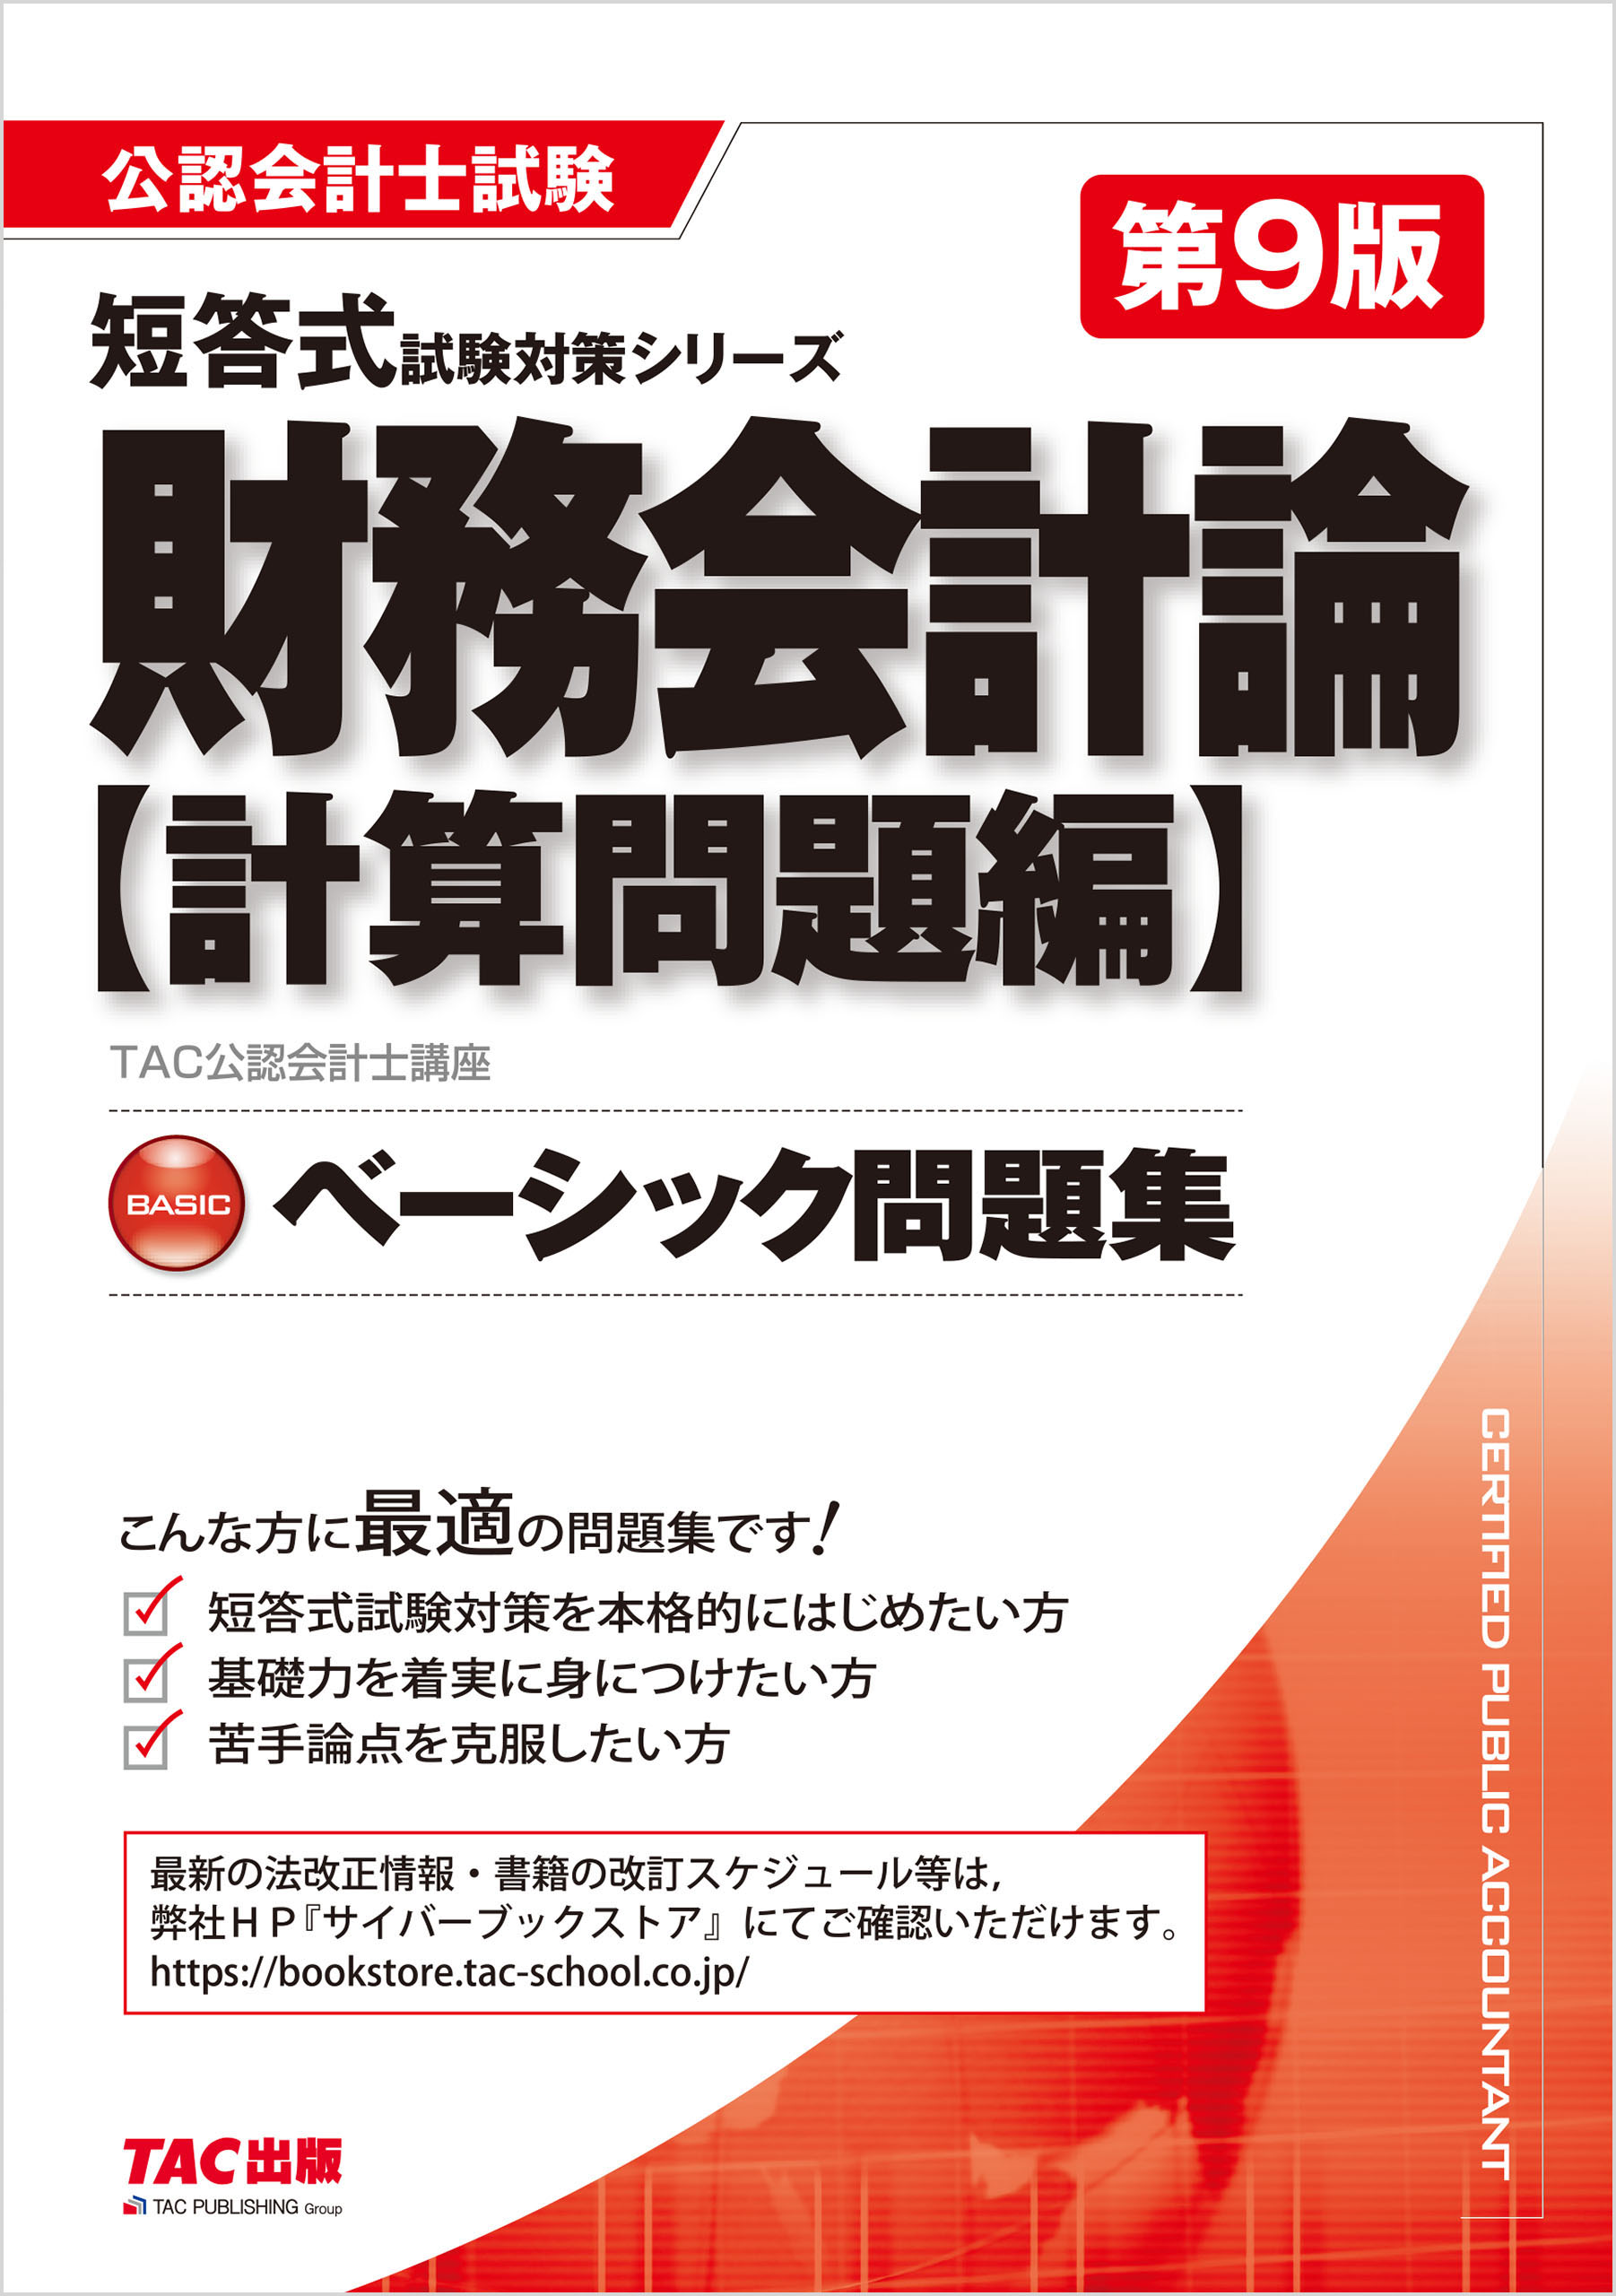 TAC 財務モデリング入門 DVD、テキスト - 通販 - warem.pe